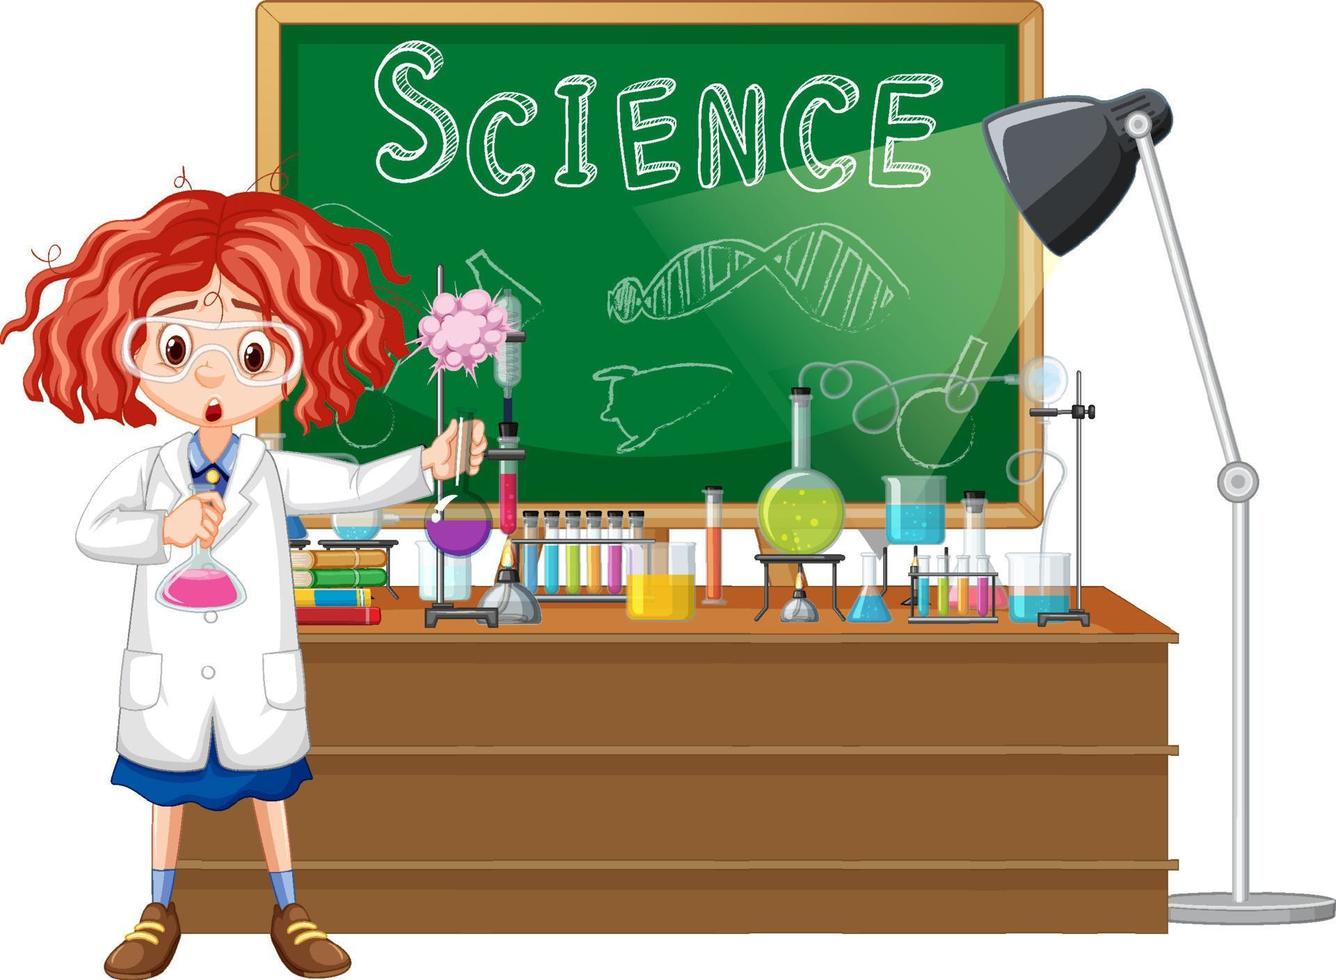 personnage de dessin animé scientifique avec des objets de laboratoire scientifique vecteur